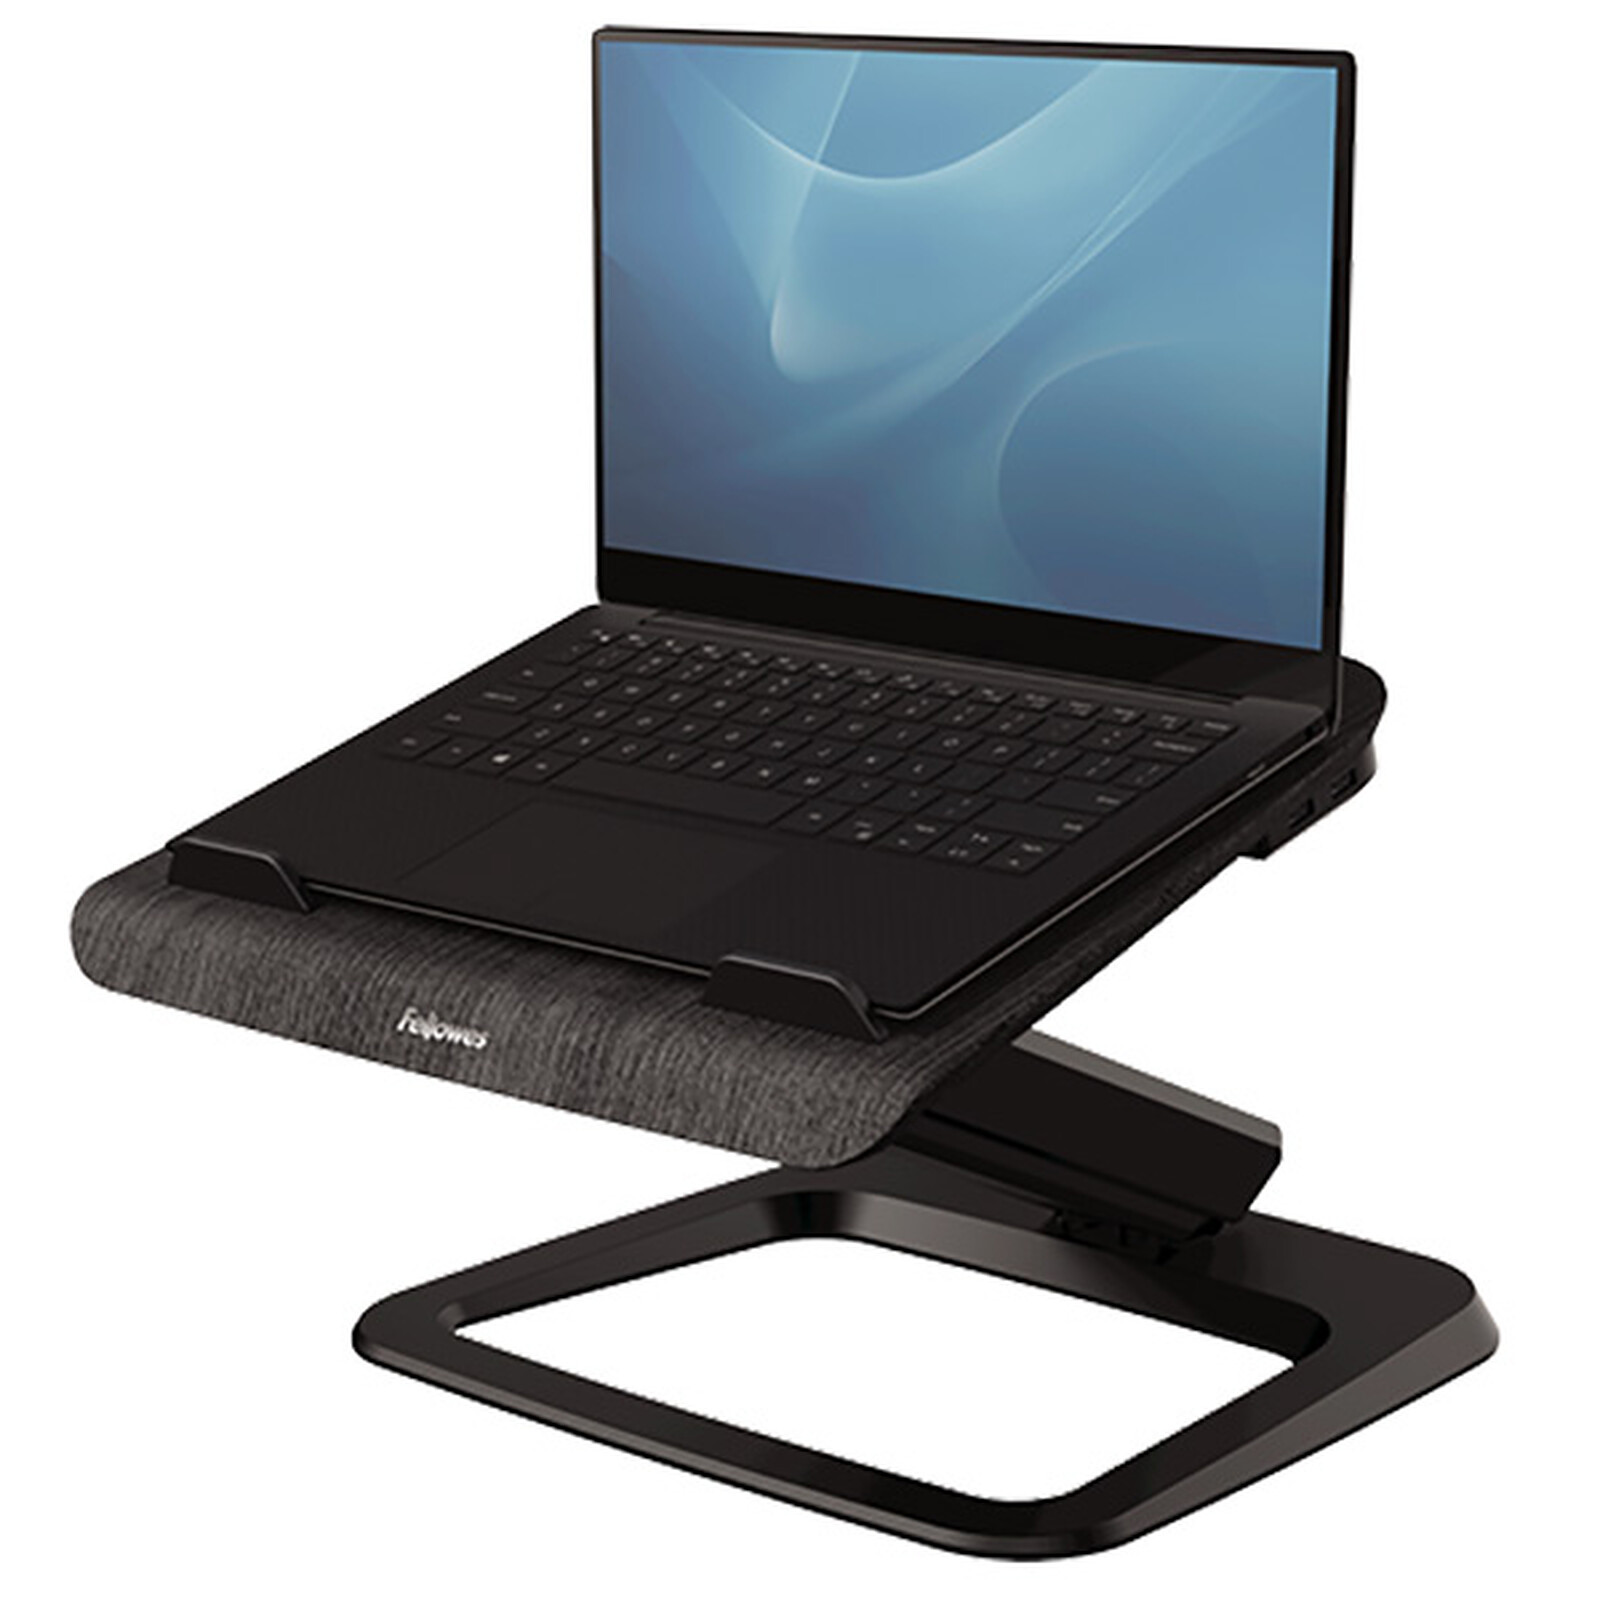 Accessoire PC portable pour professionnels (entreprises